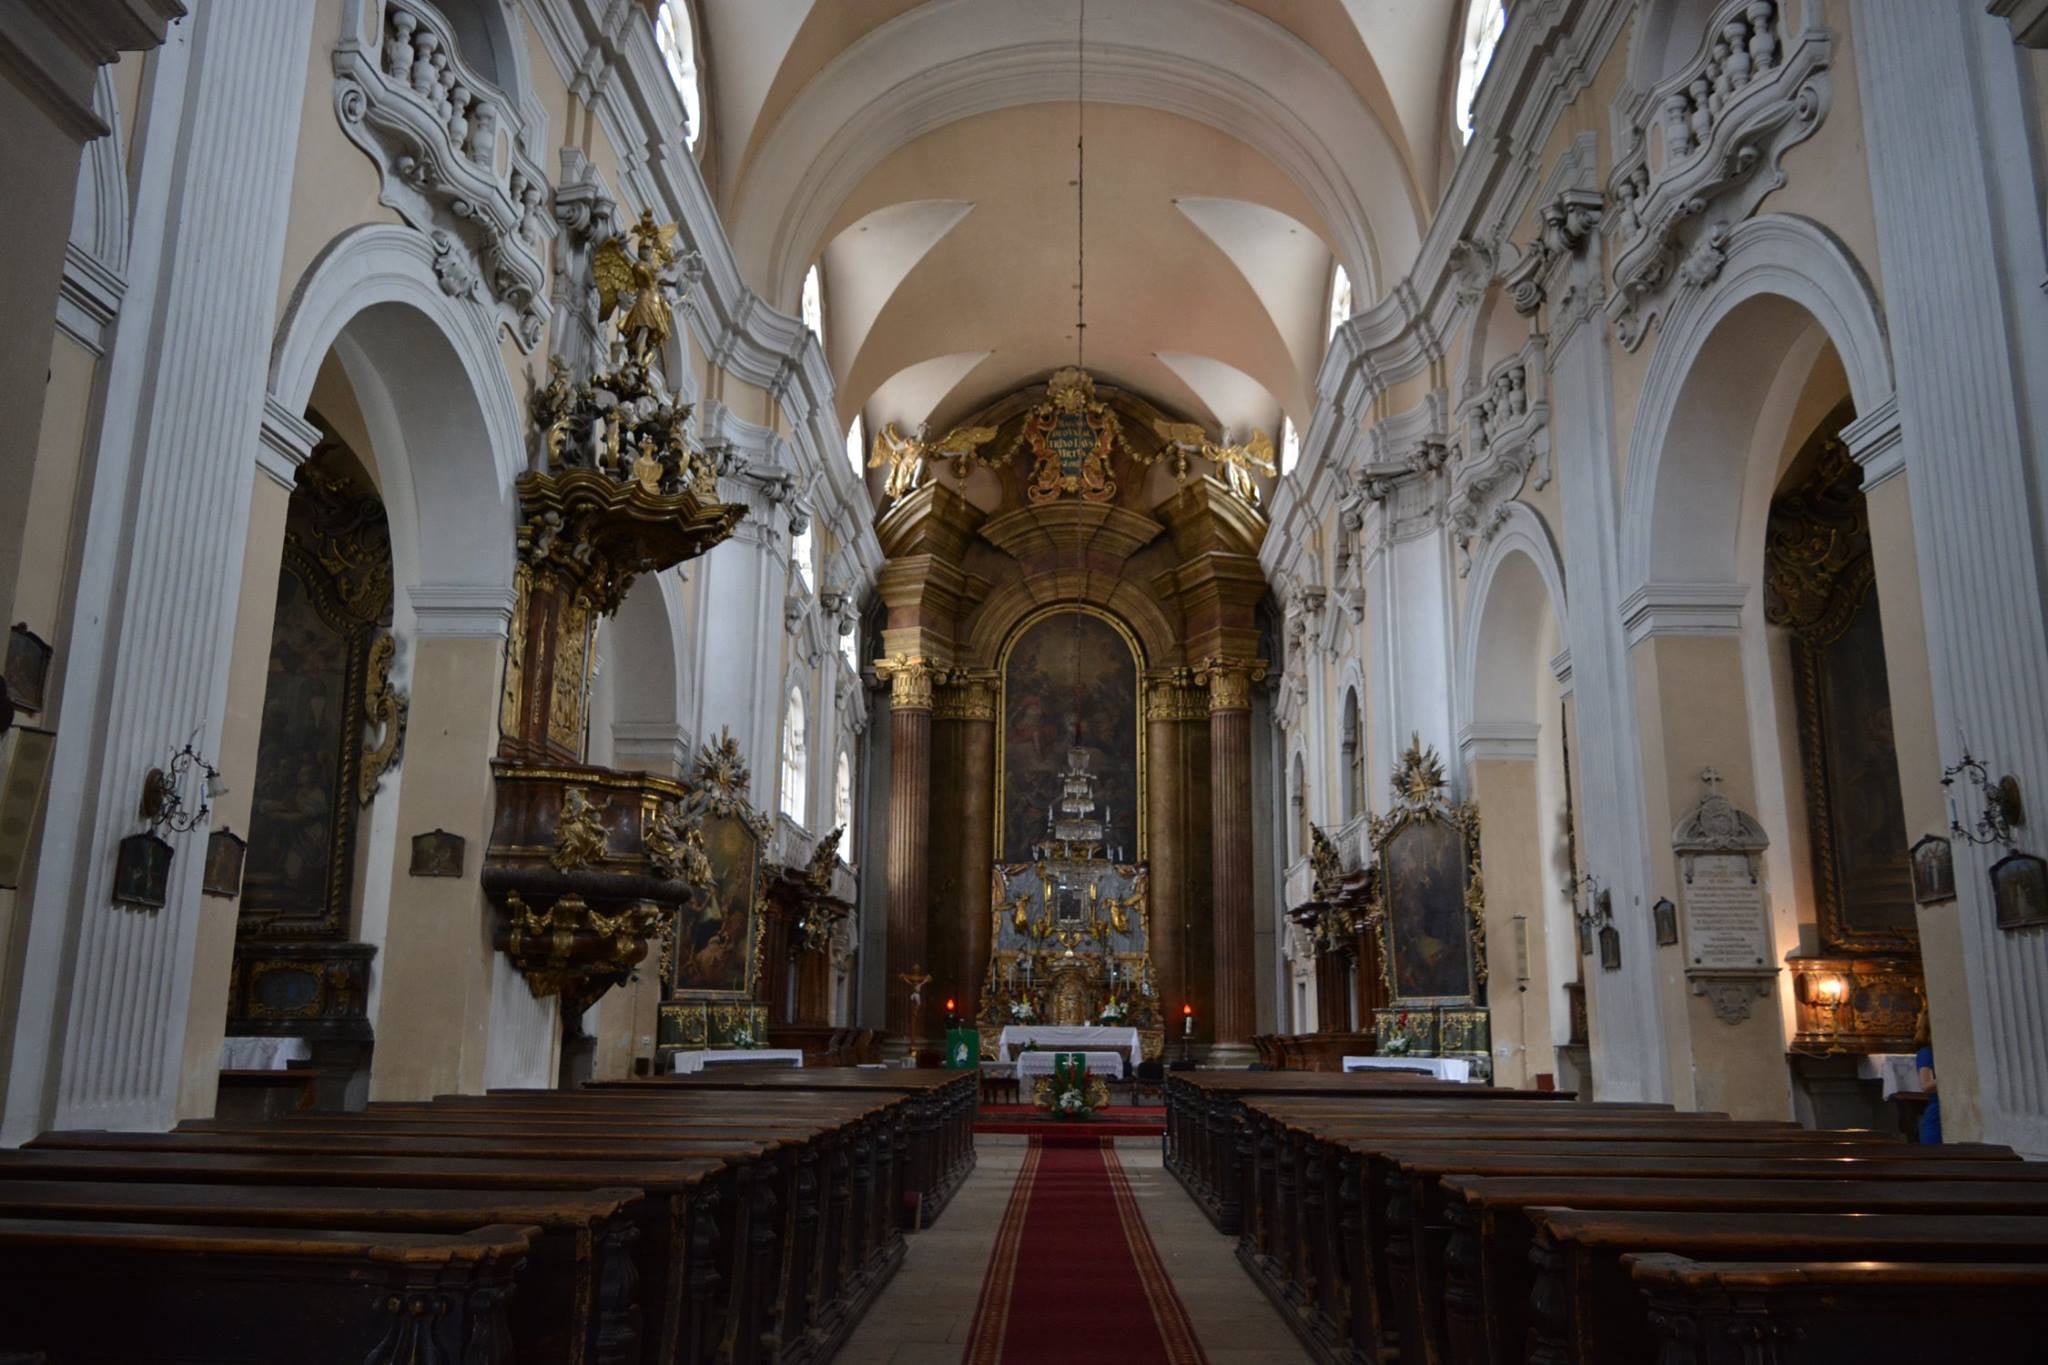 Adevărata icoană făcătoare de minuni nu este la Nicula, ci într-o biserică din centrul Clujului!